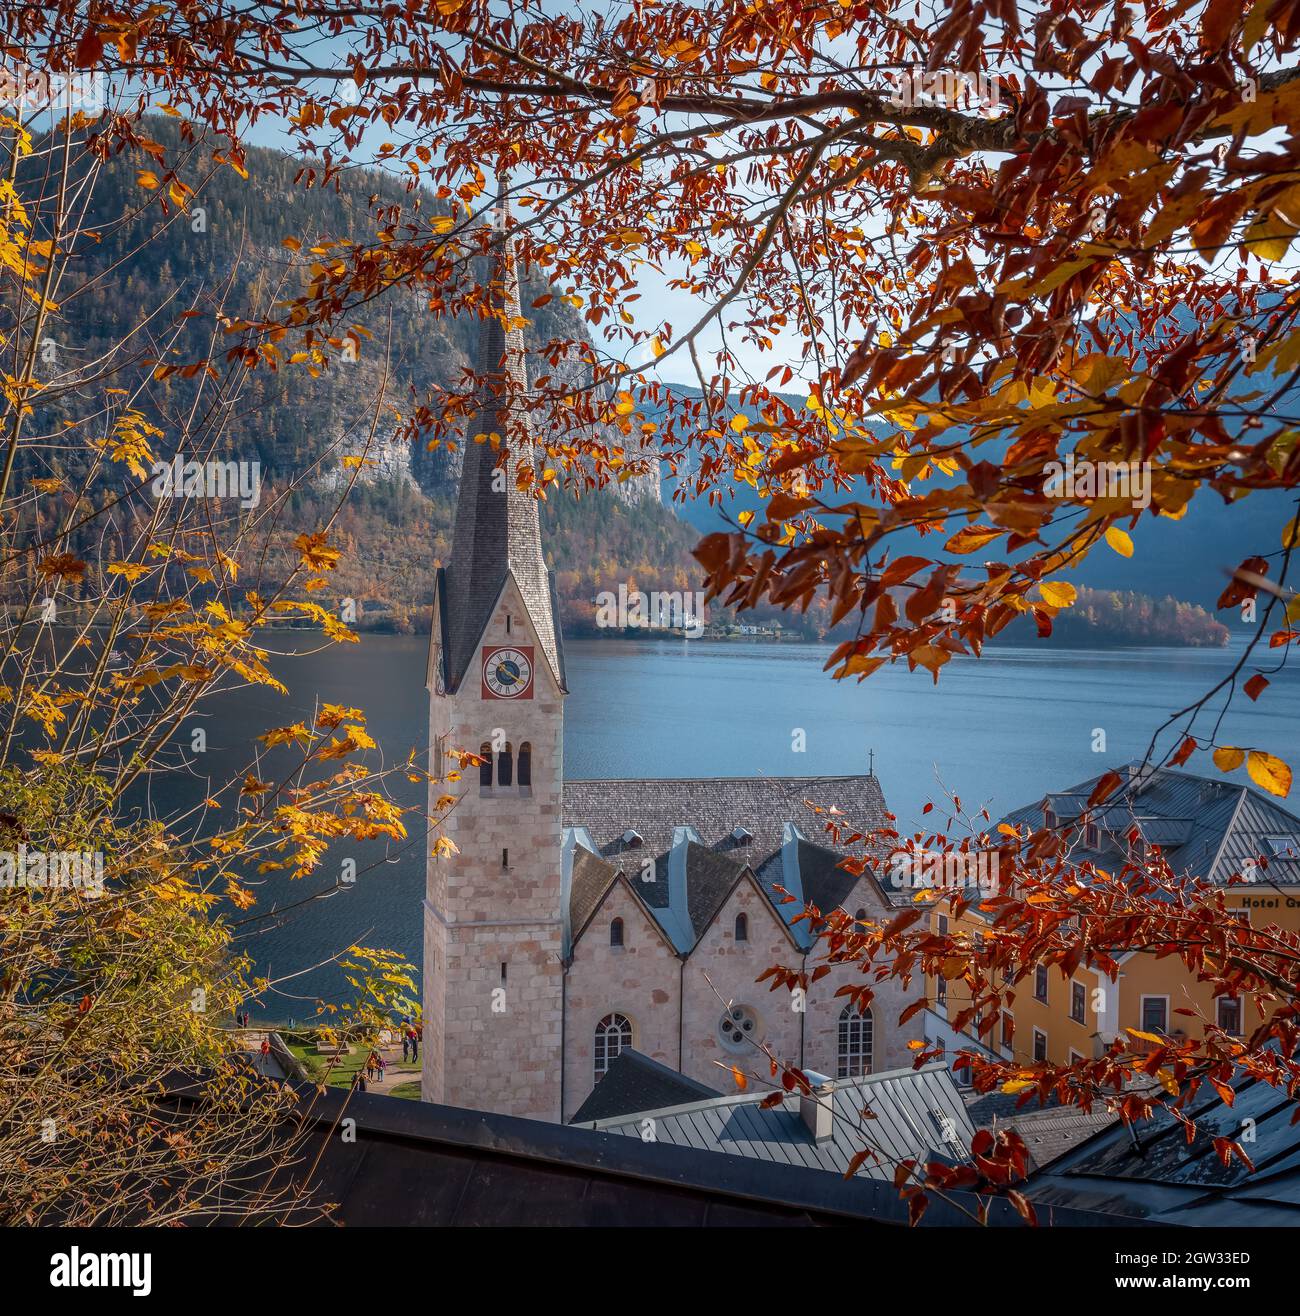 Hallstatt Evangelische Kirche mit Herbstfarben - Hallstatt, Österreich Stockfoto